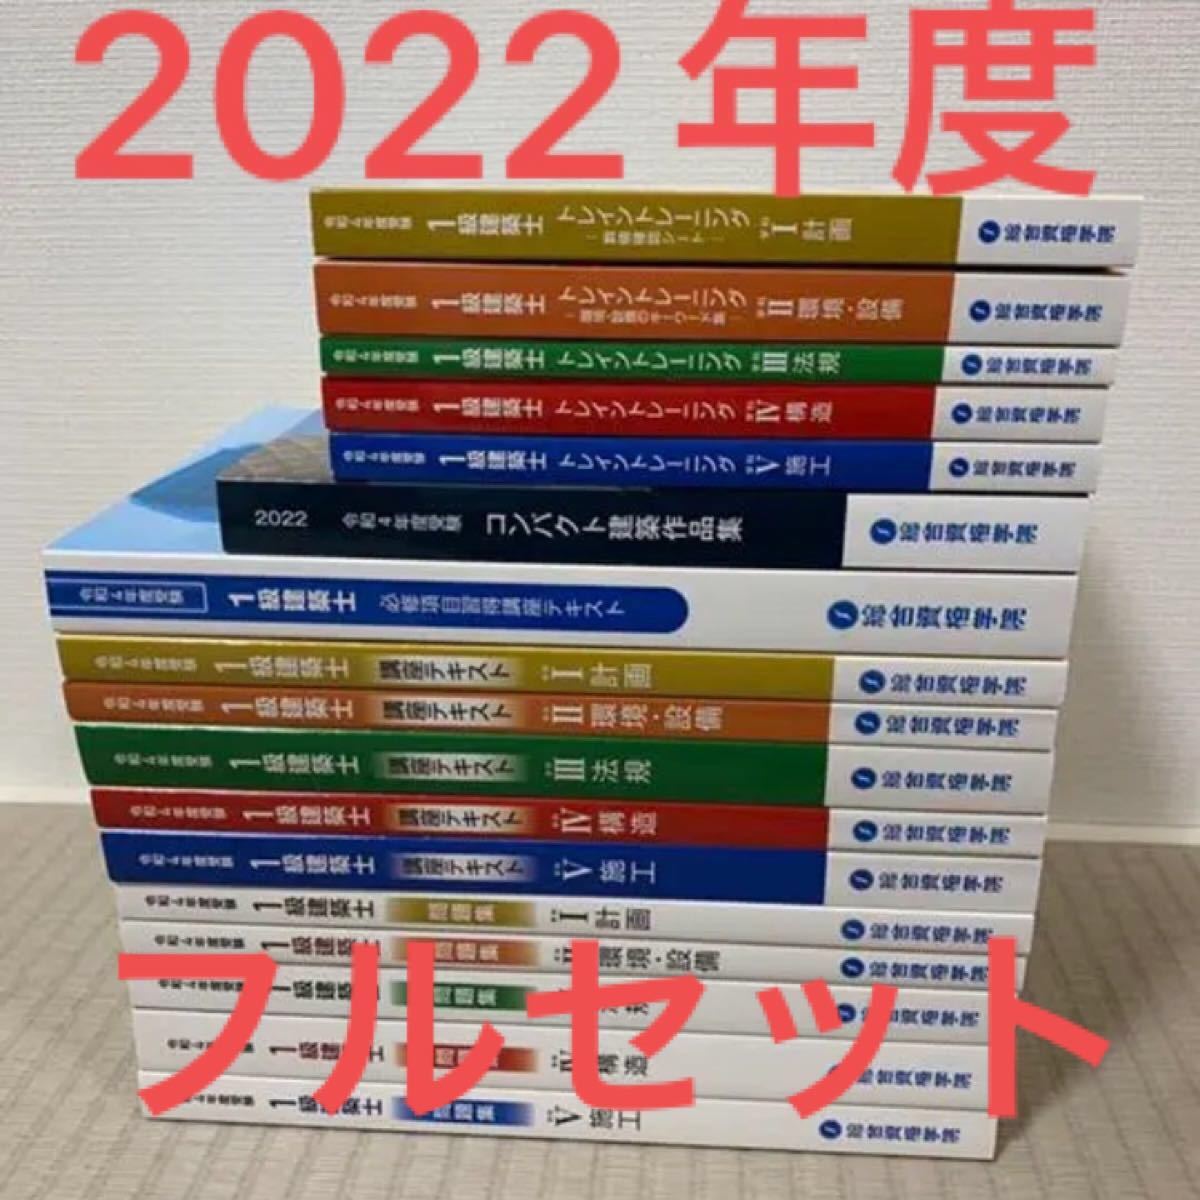 27571円 【美品】 令和4年 二級建築士 総合資格 テキスト 問題集 トレトレ 2022年